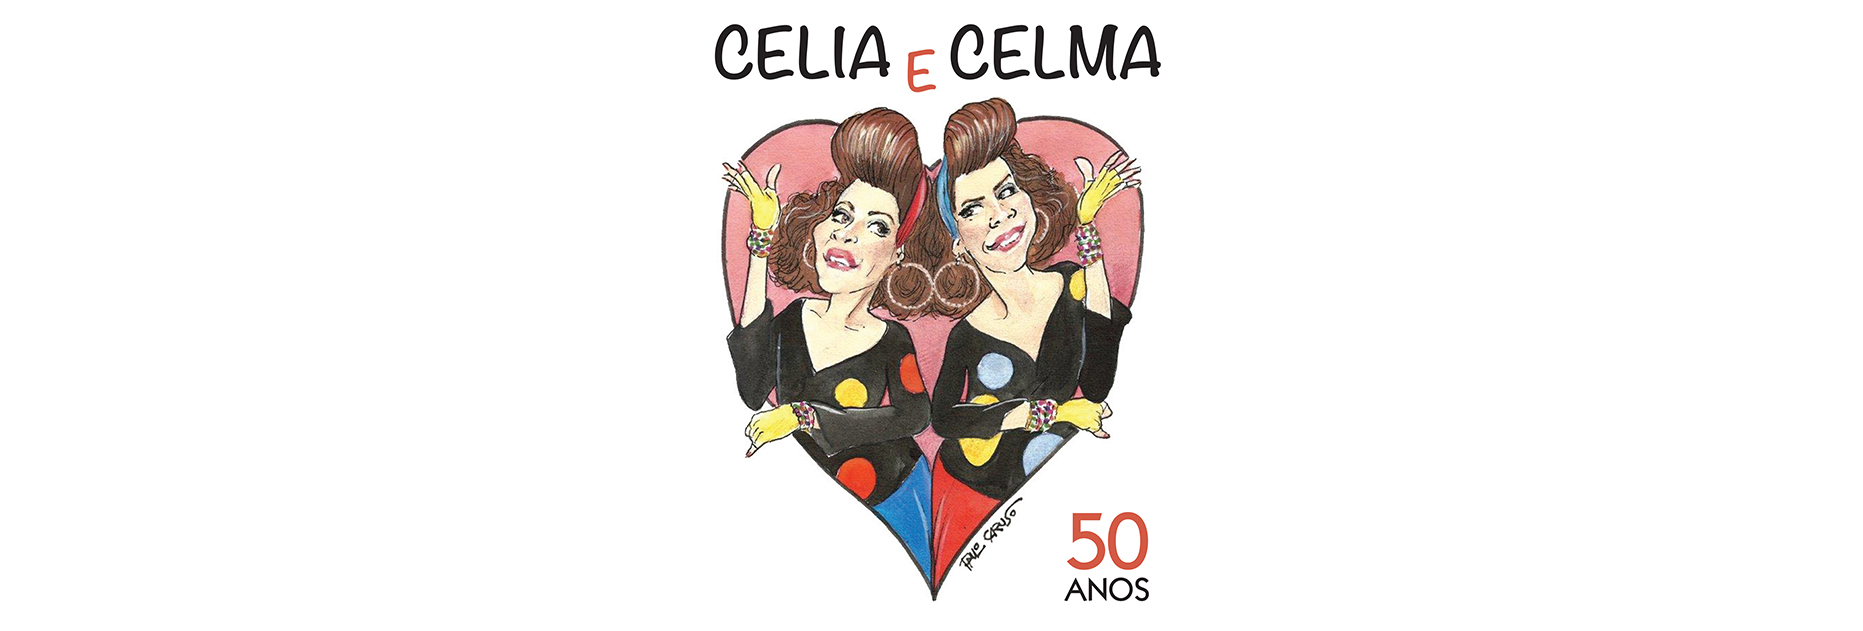 Os 50 anos de carreira da dupla de gêmeas Célia e Celma